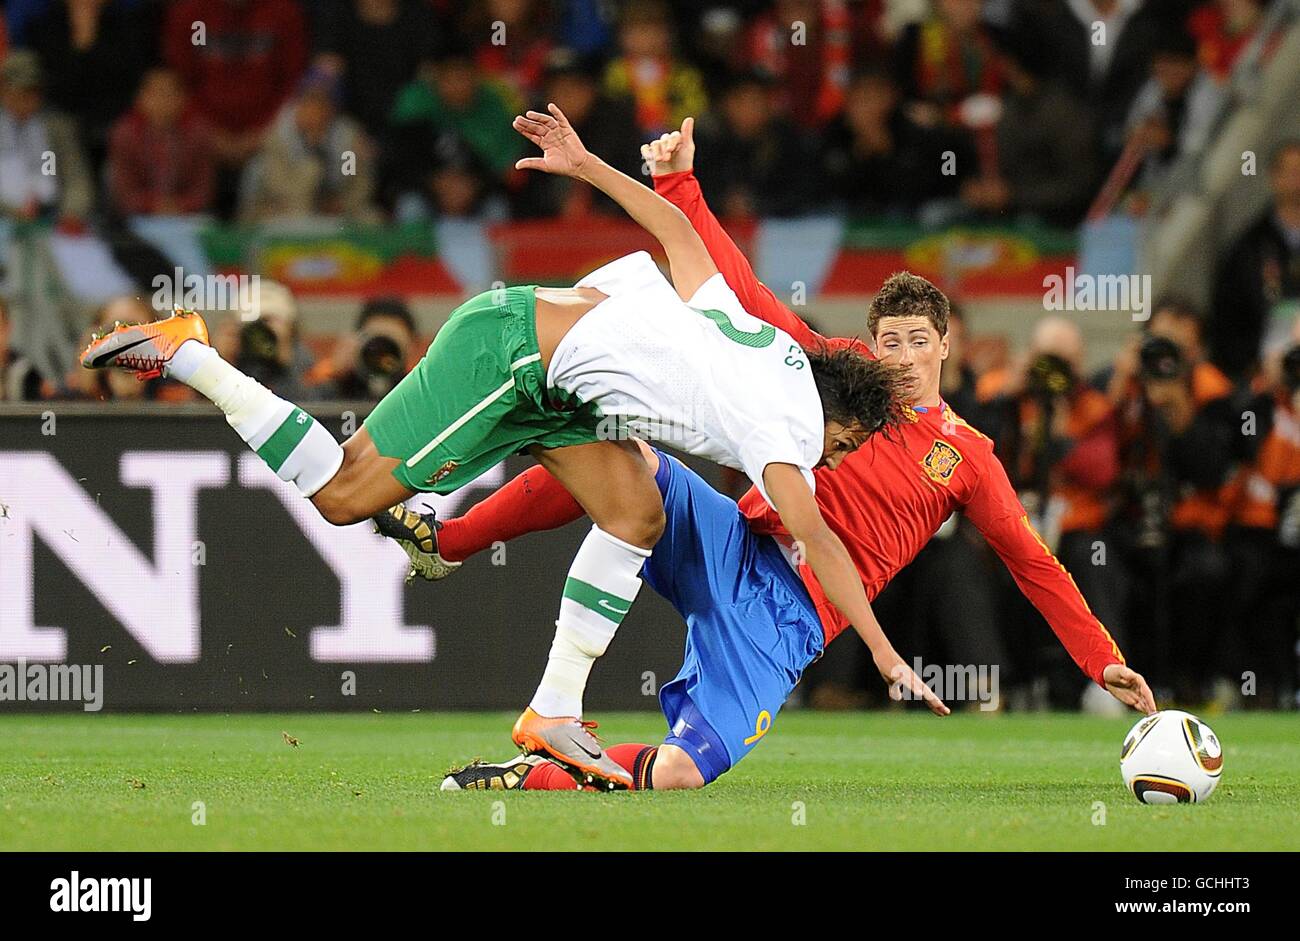 Portugal's Eduardo Bruno Alves (left) and Spain's Fernando Torres battle for the ball Stock Photo